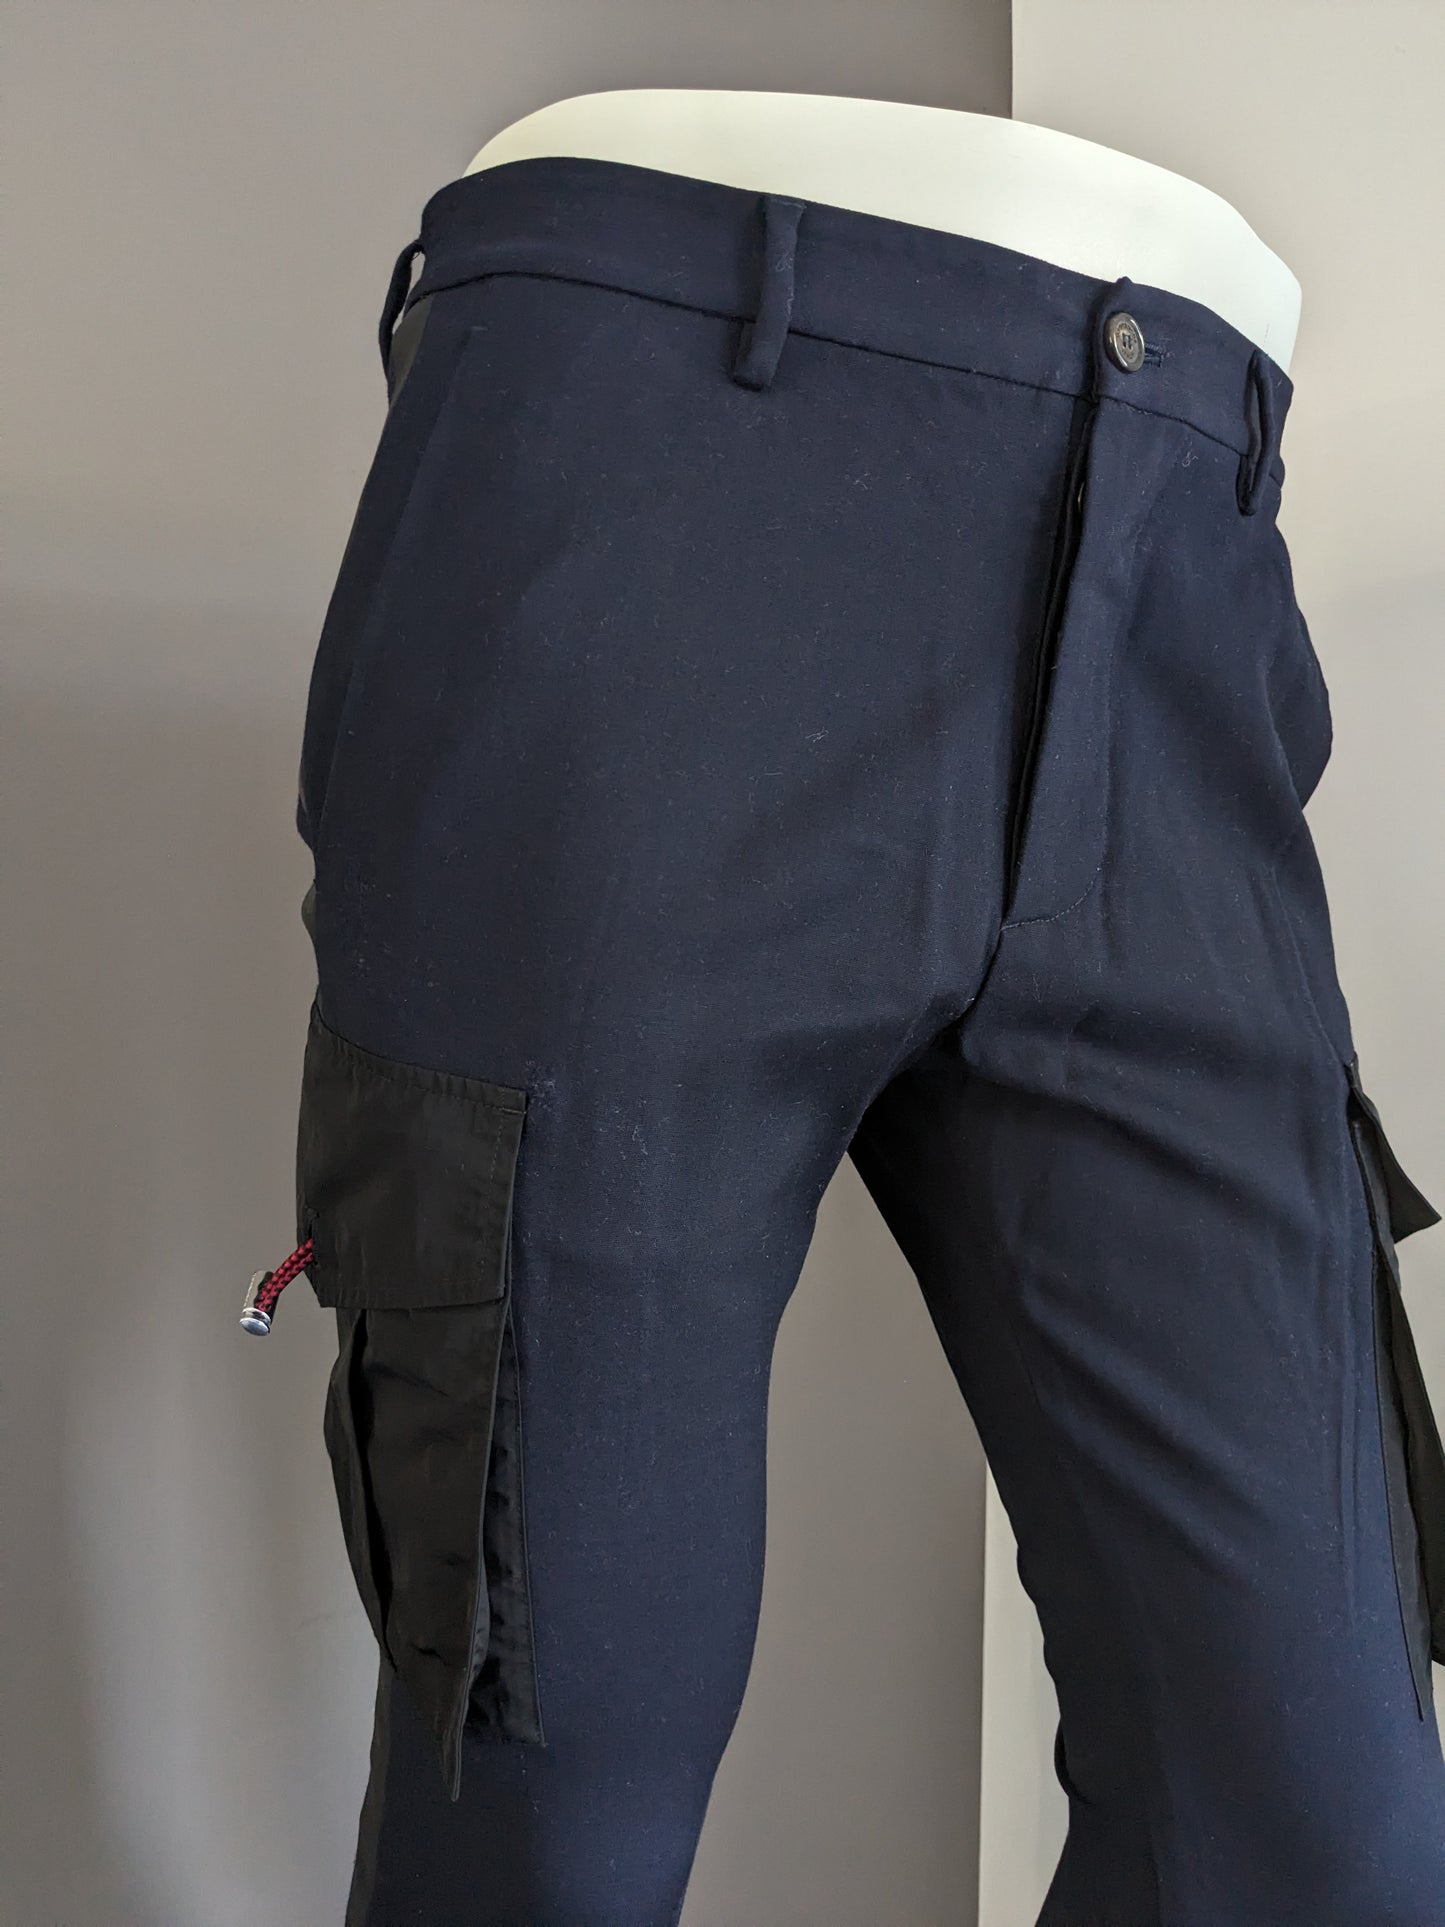 Pantalón cargo ajustado Dsquared2. Color negro azul oscuro. Talla 46/S.